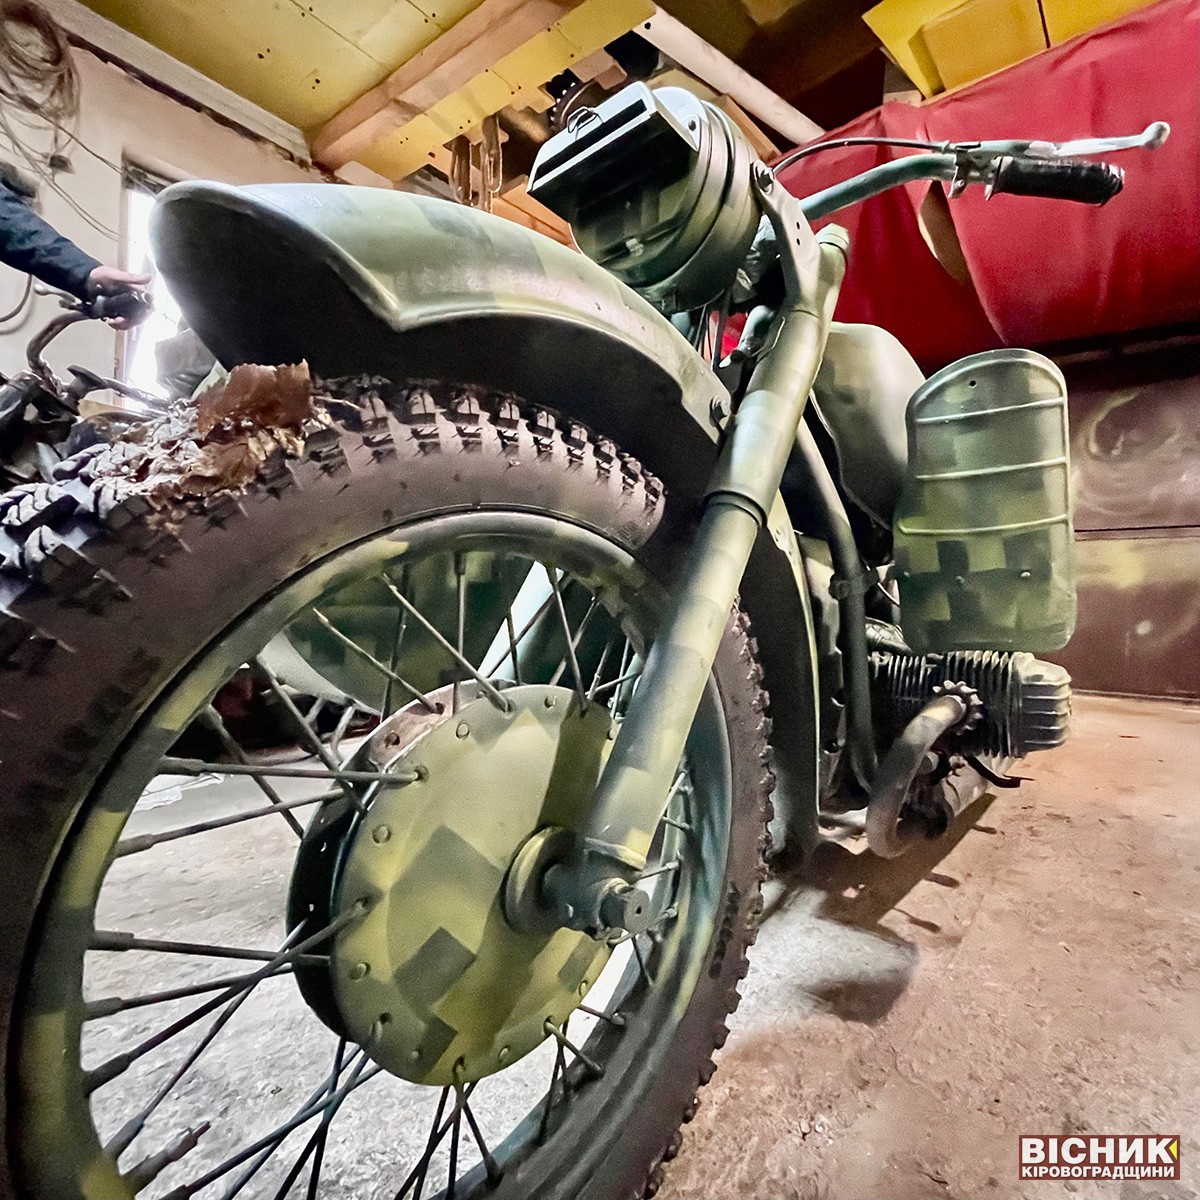 Механіки зі Знам’янки потребують запчастин для мотоциклів «Оркодав», які чекають на фронті